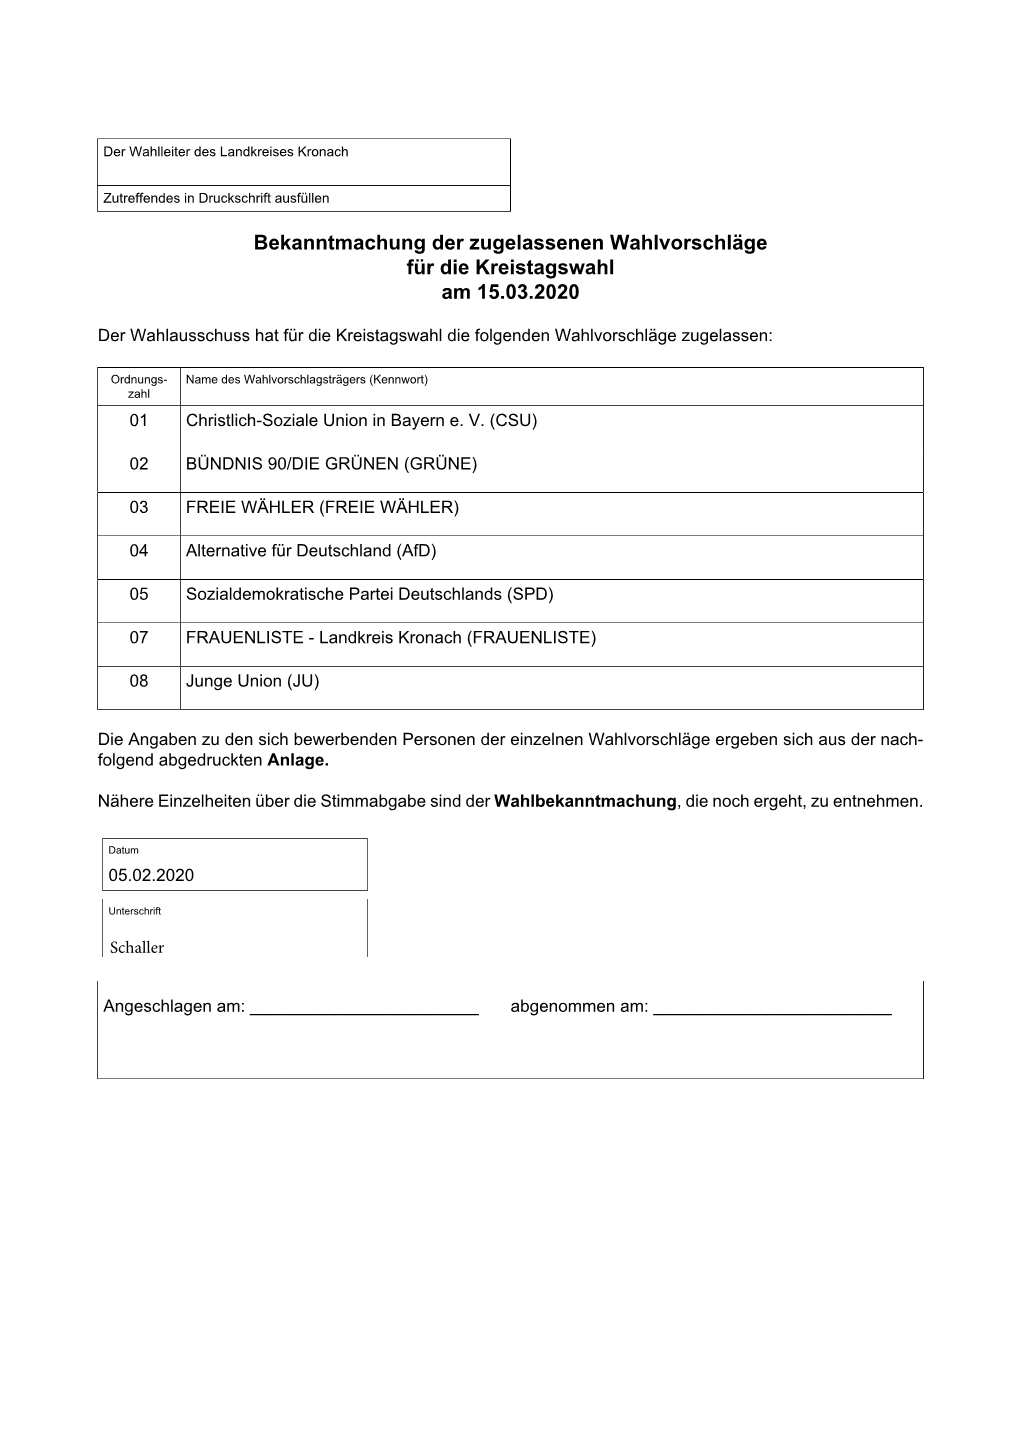 Bekanntmachung Der Zugelassenen Wahlvorschläge Für Die Kreistagswahl Am 15.03.2020